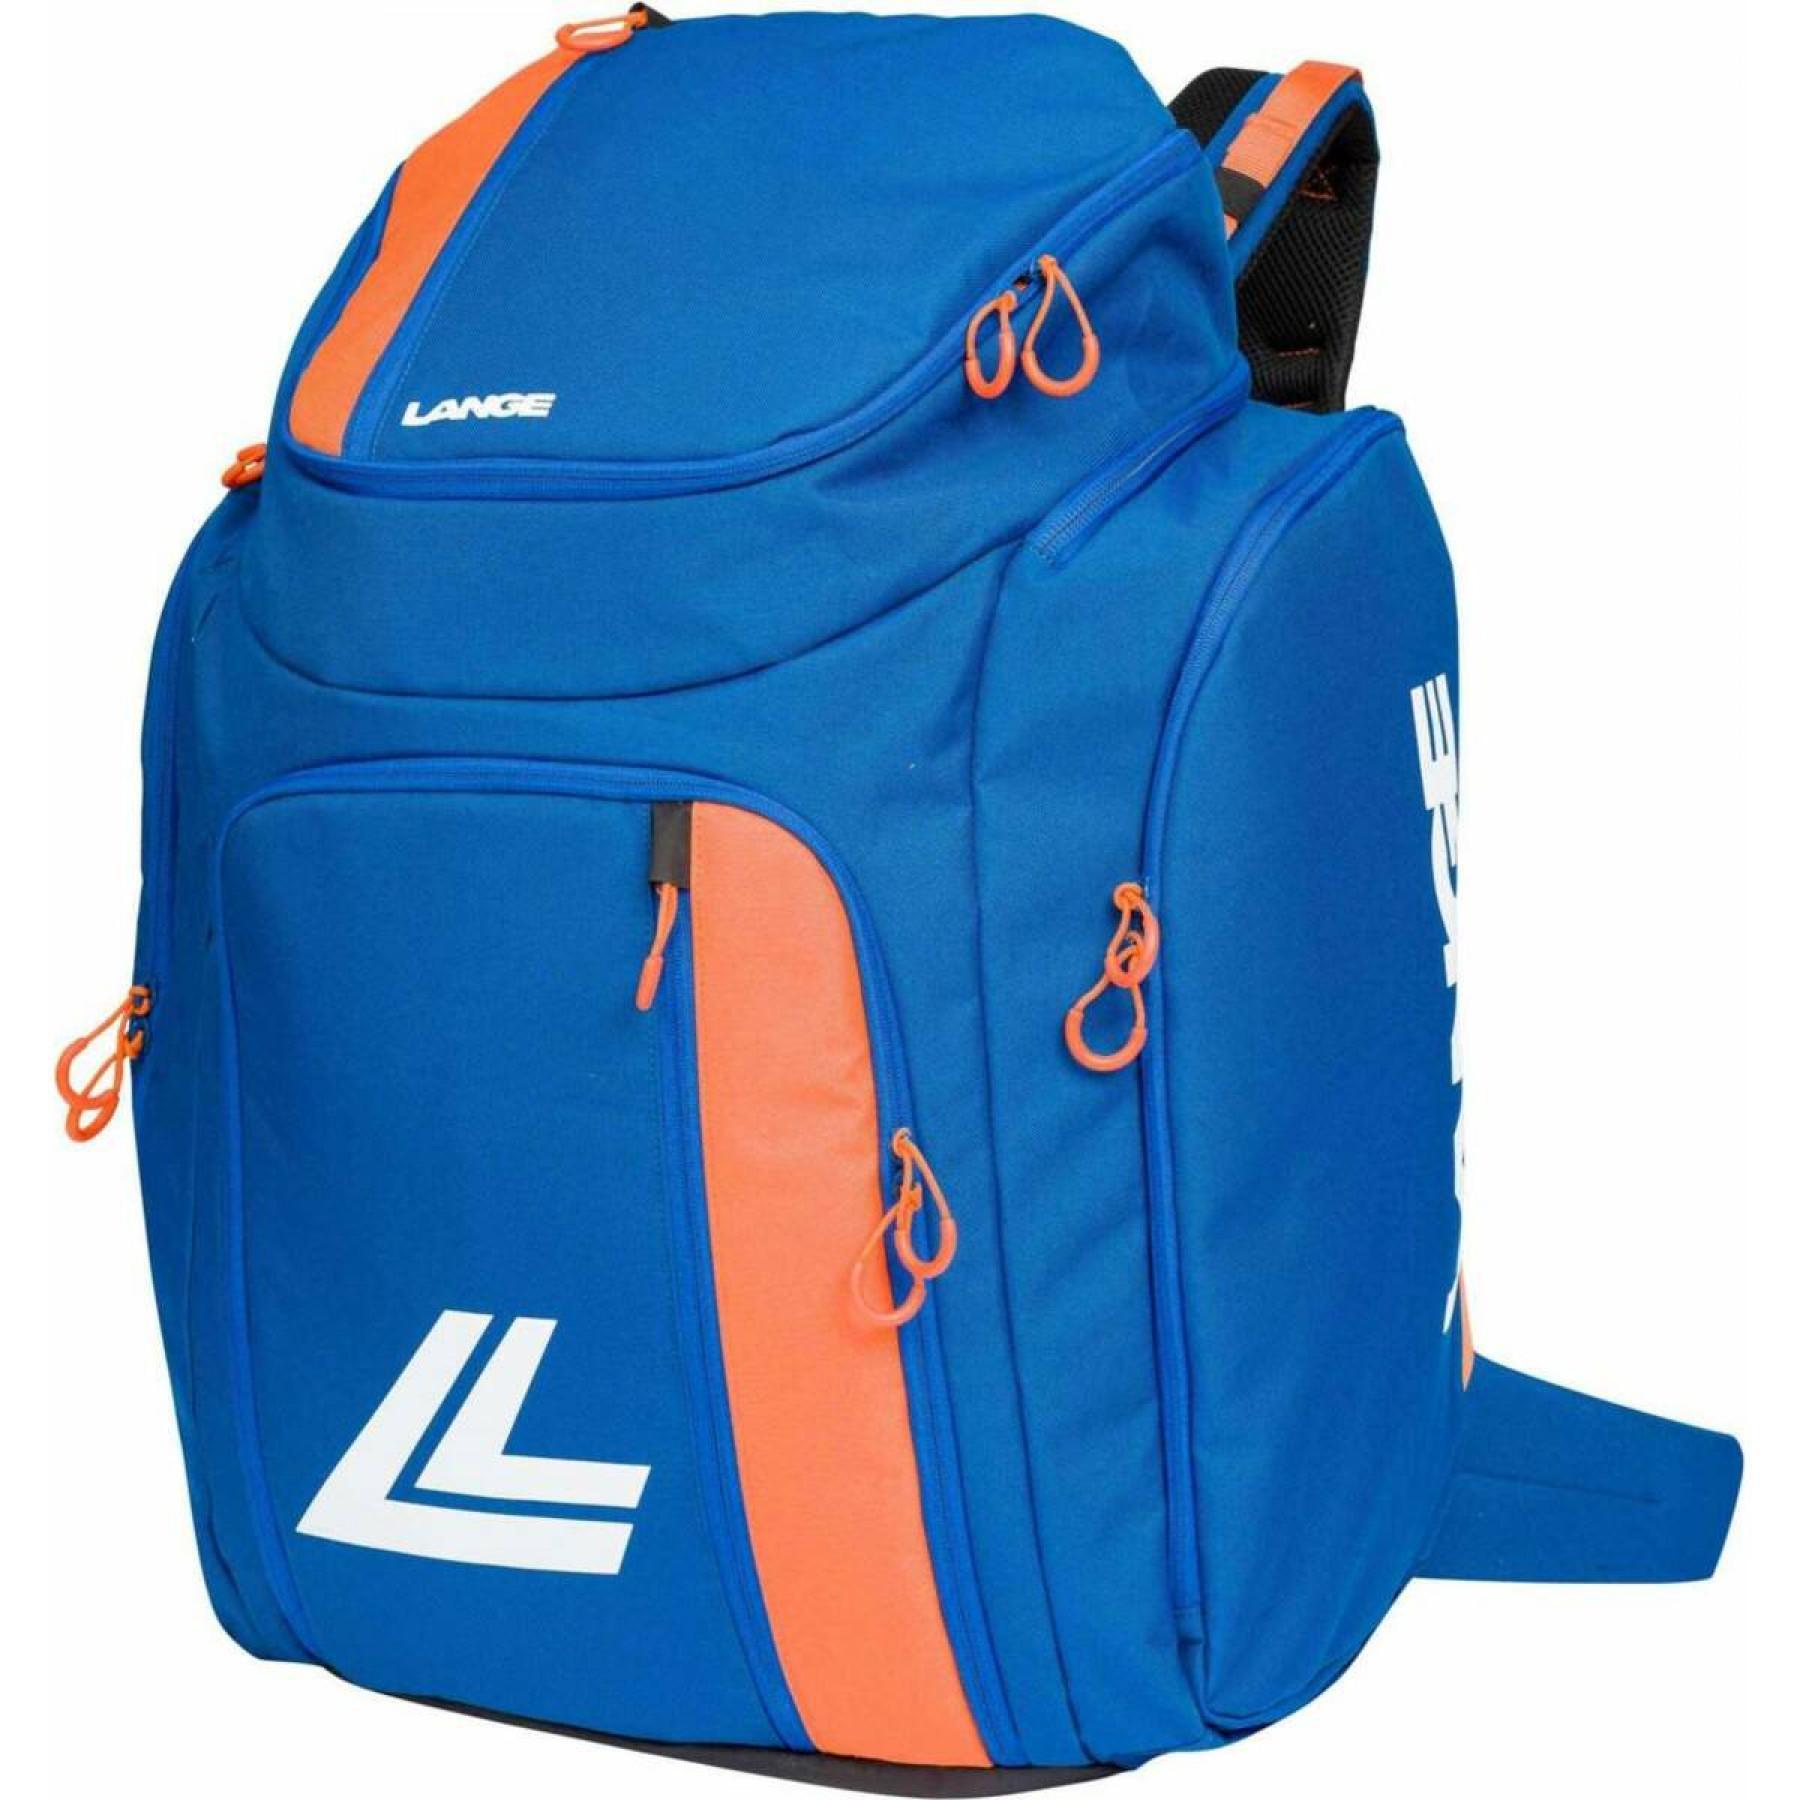 Backpack Lange racer